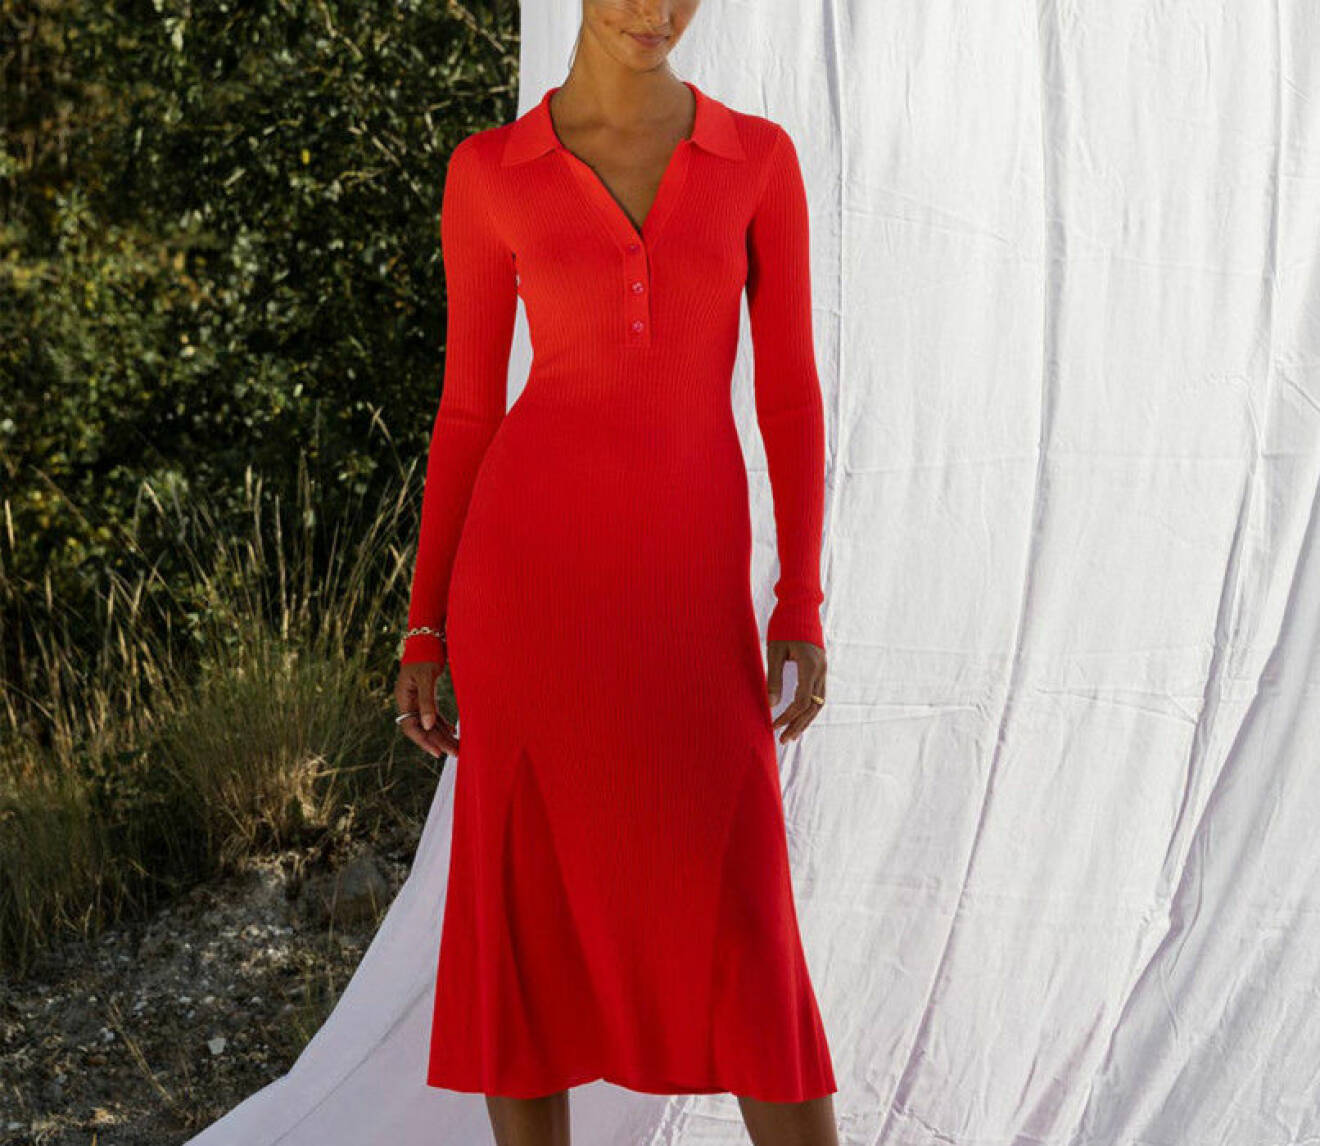 Kvinna i en röd stickad klänning.